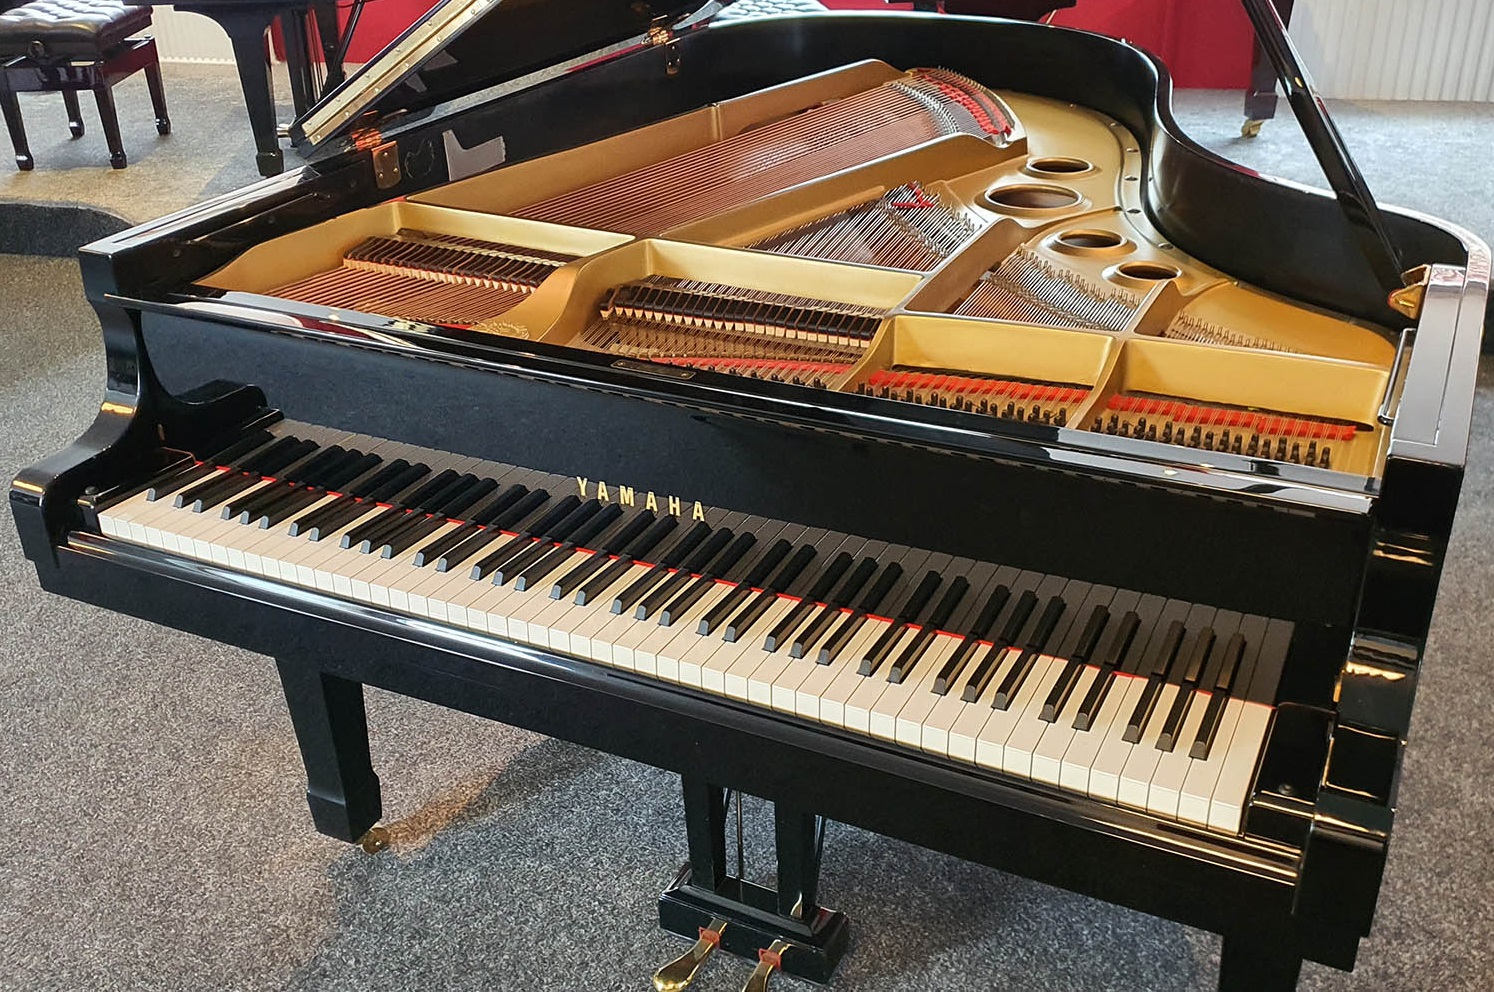 Sloot Pianoservice: Amphion huurt regelmatig een instrument